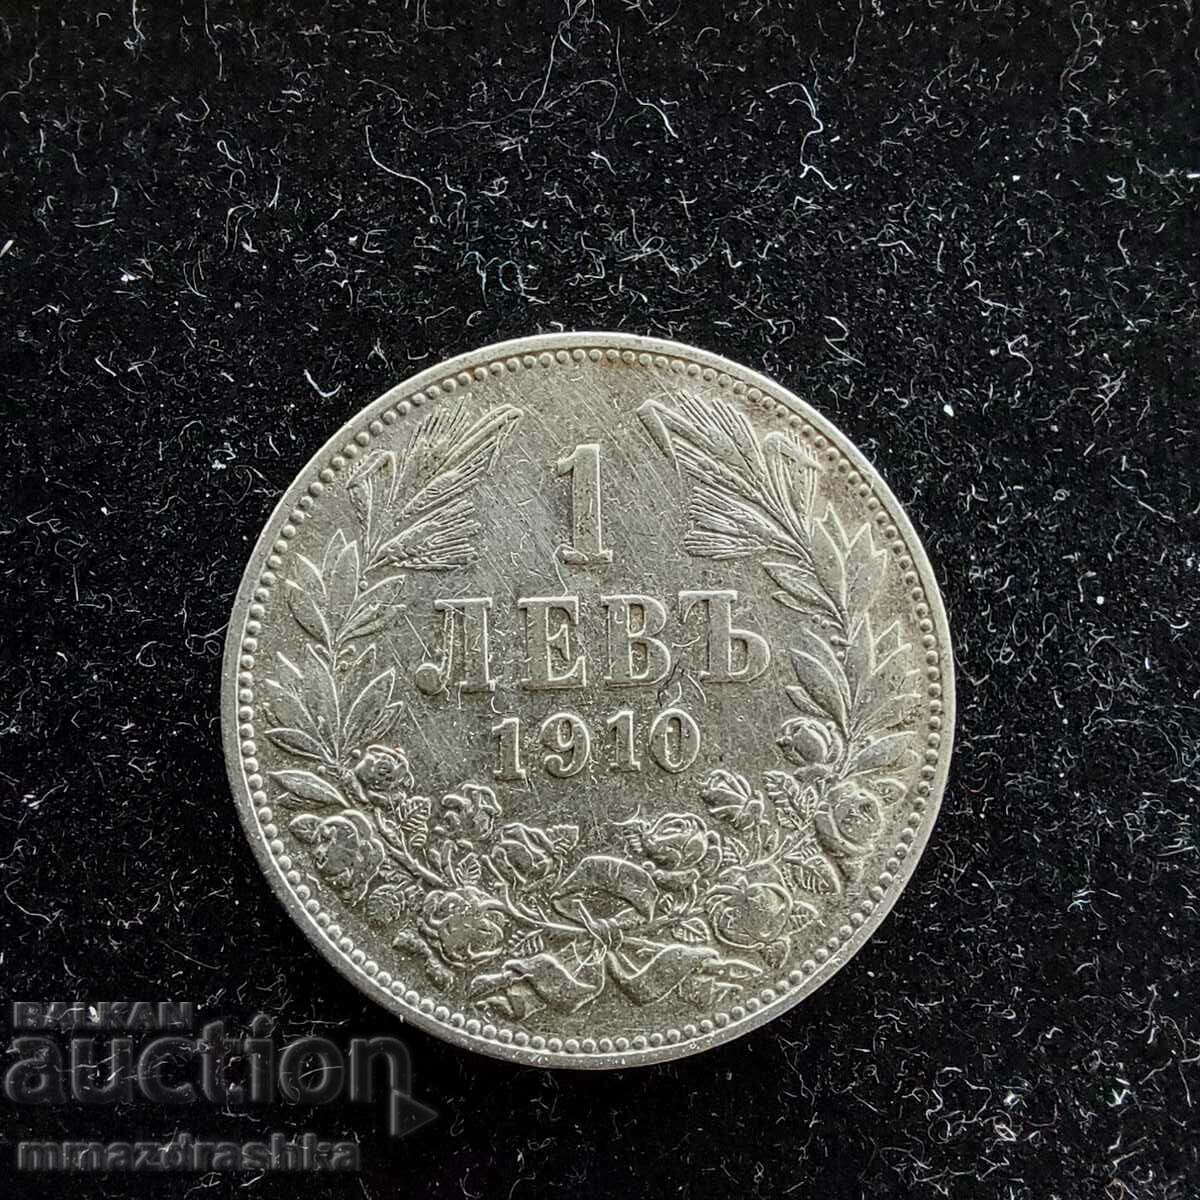 1 λεβ, δεκαετία του 1910, ασήμι